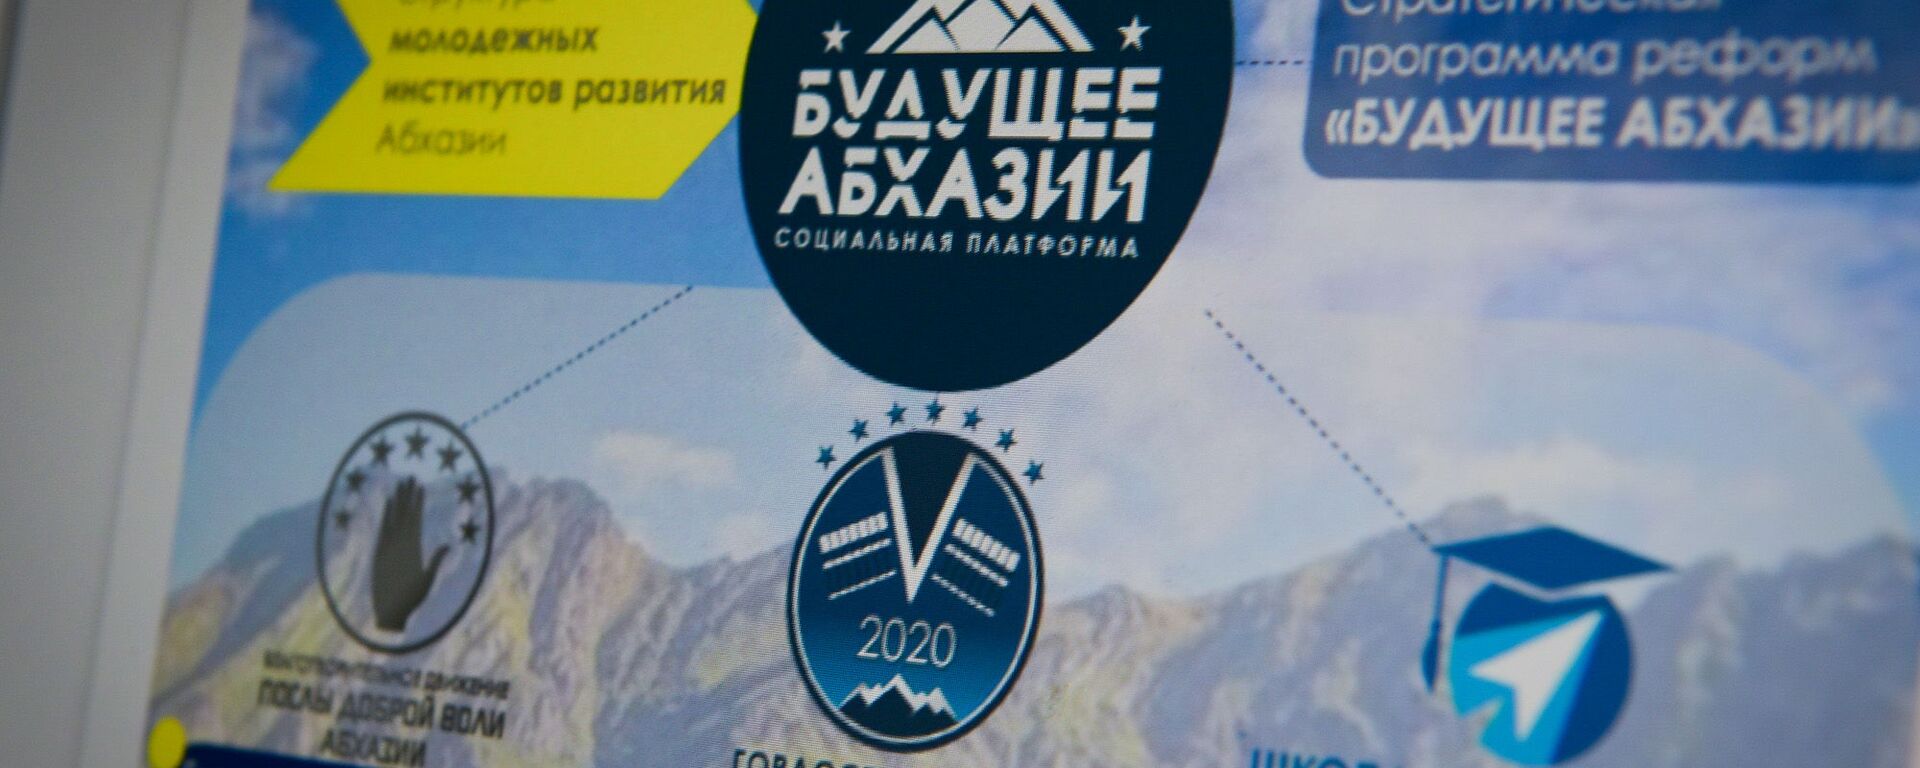 Программа реформ Будущее Абхазии была разработана финалистами конкурса Гордость Абхазии - Sputnik Аҧсны, 1920, 14.02.2022